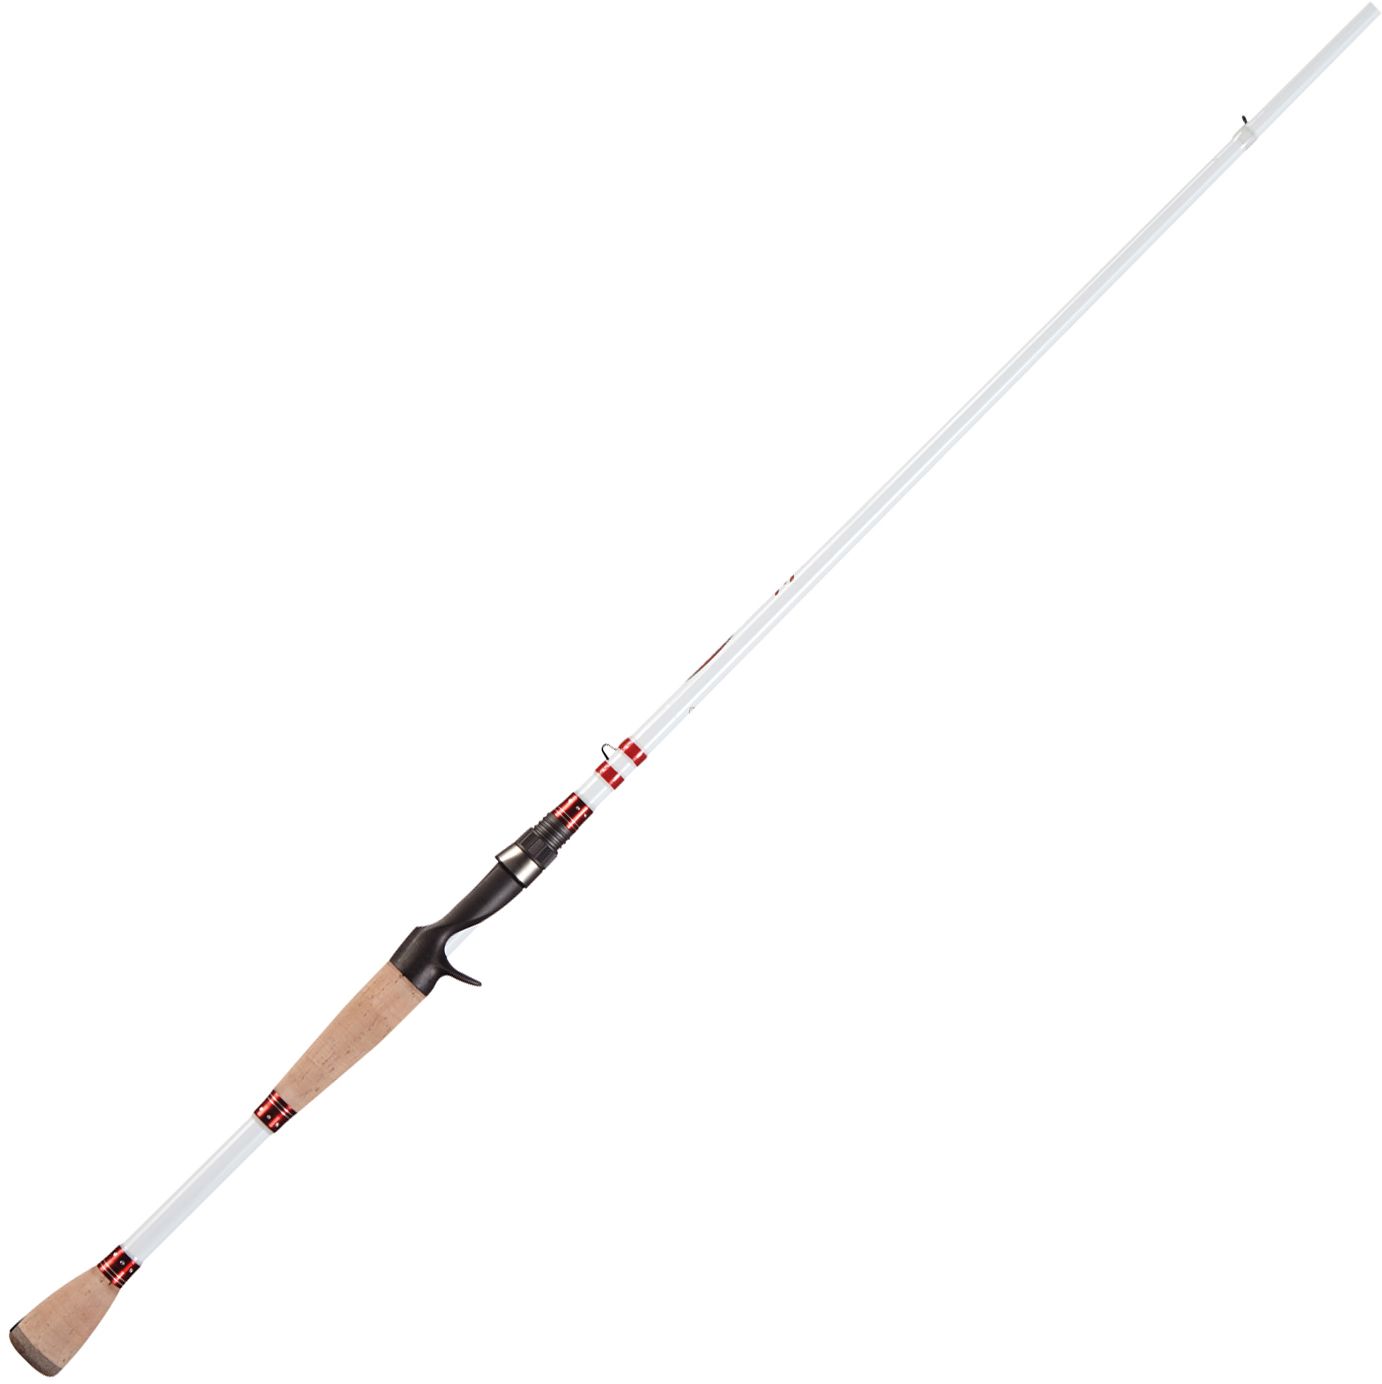 Photos - Other for Fishing Duckett Fishing Micro Magic Pro Casting Rod 15DKFUMCRMGCPR66MROD